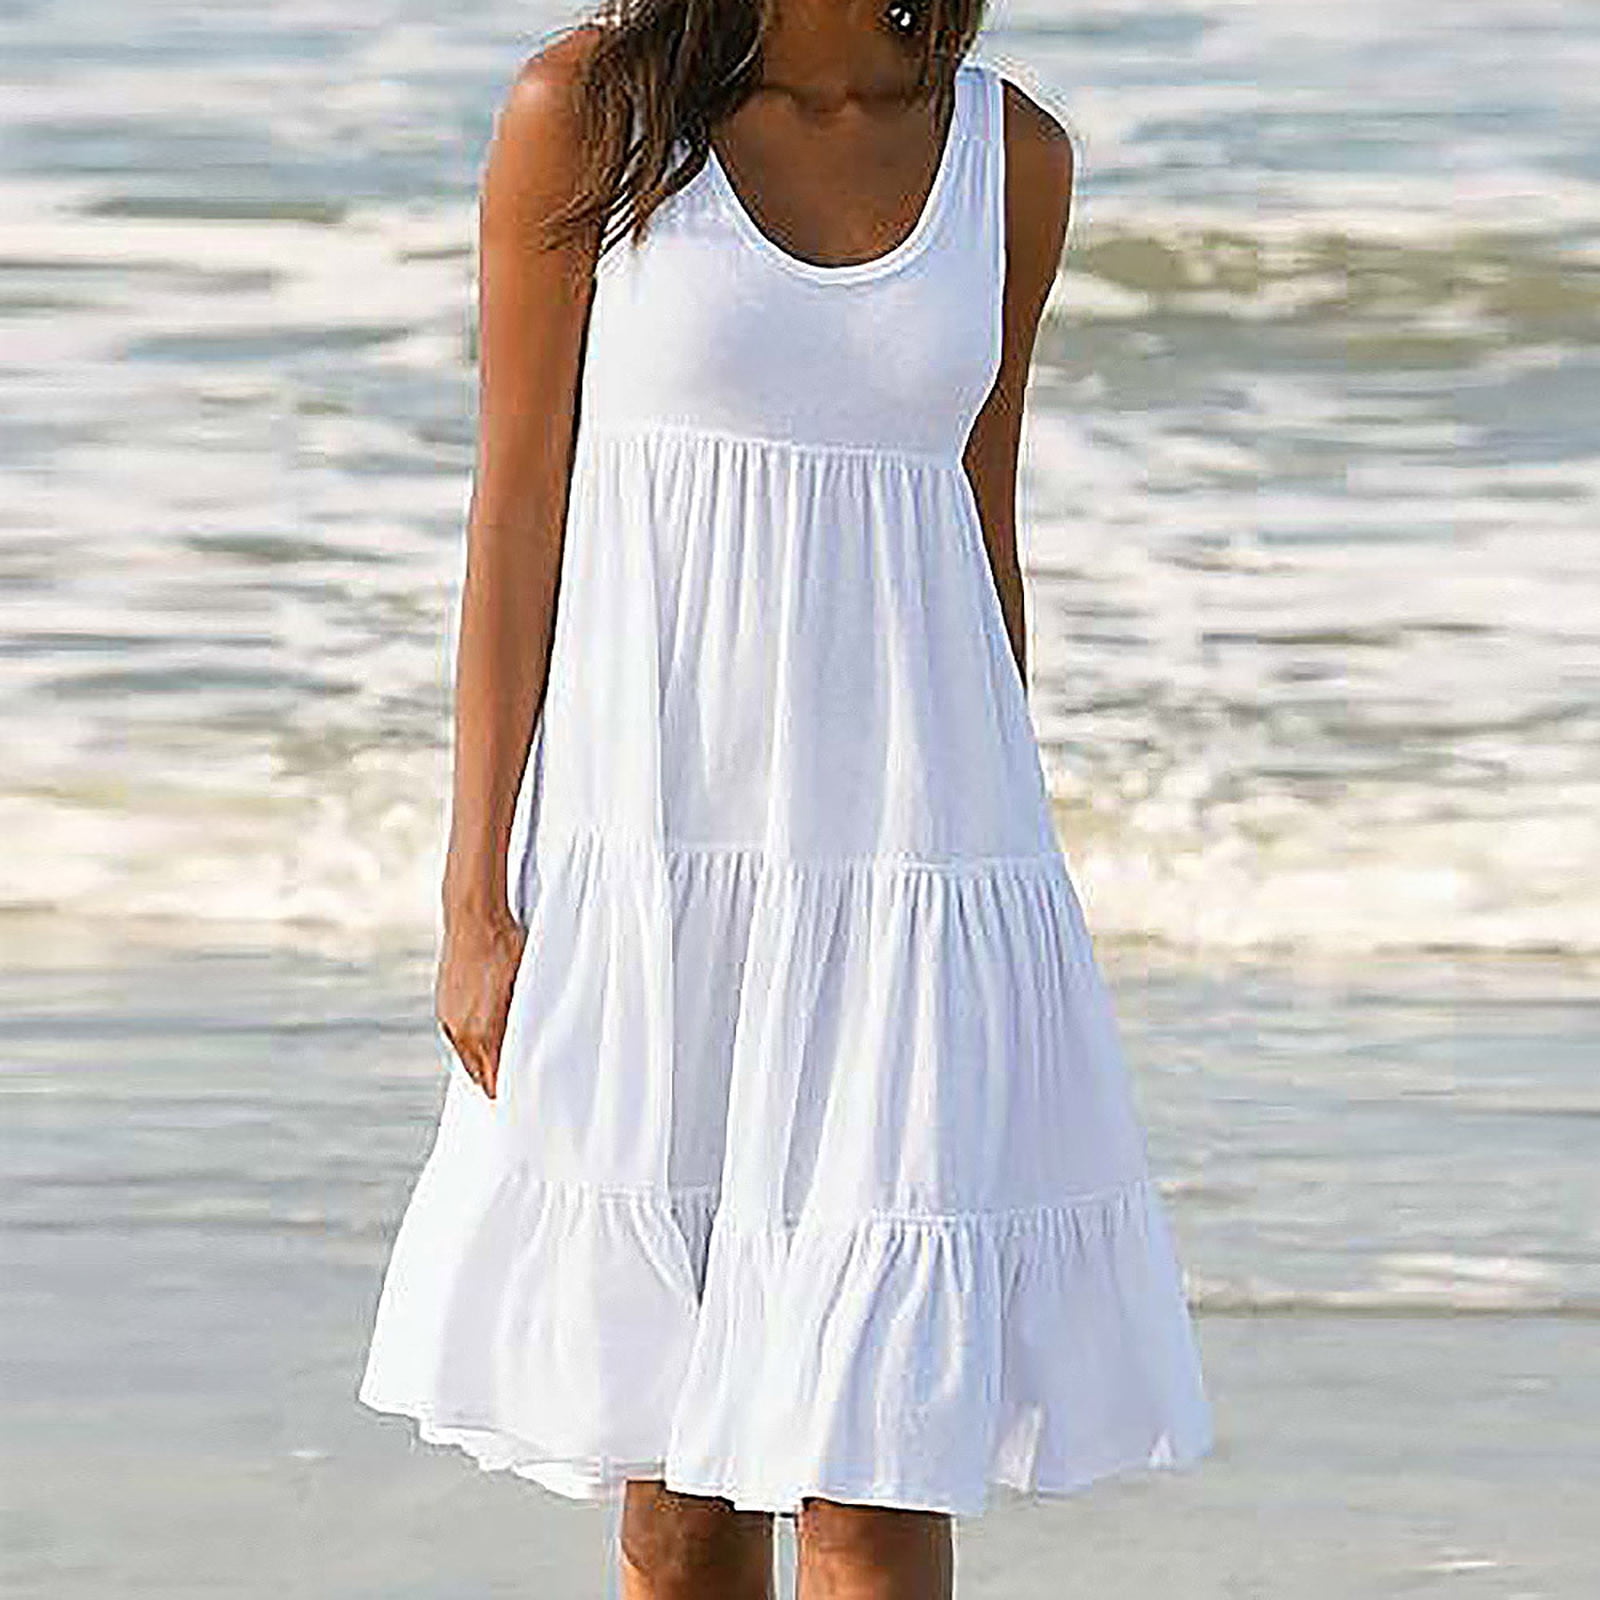 Holiday Dress Summer Holiday Dress white dress summer dresses summer party dress women dress casual dress women beach dress